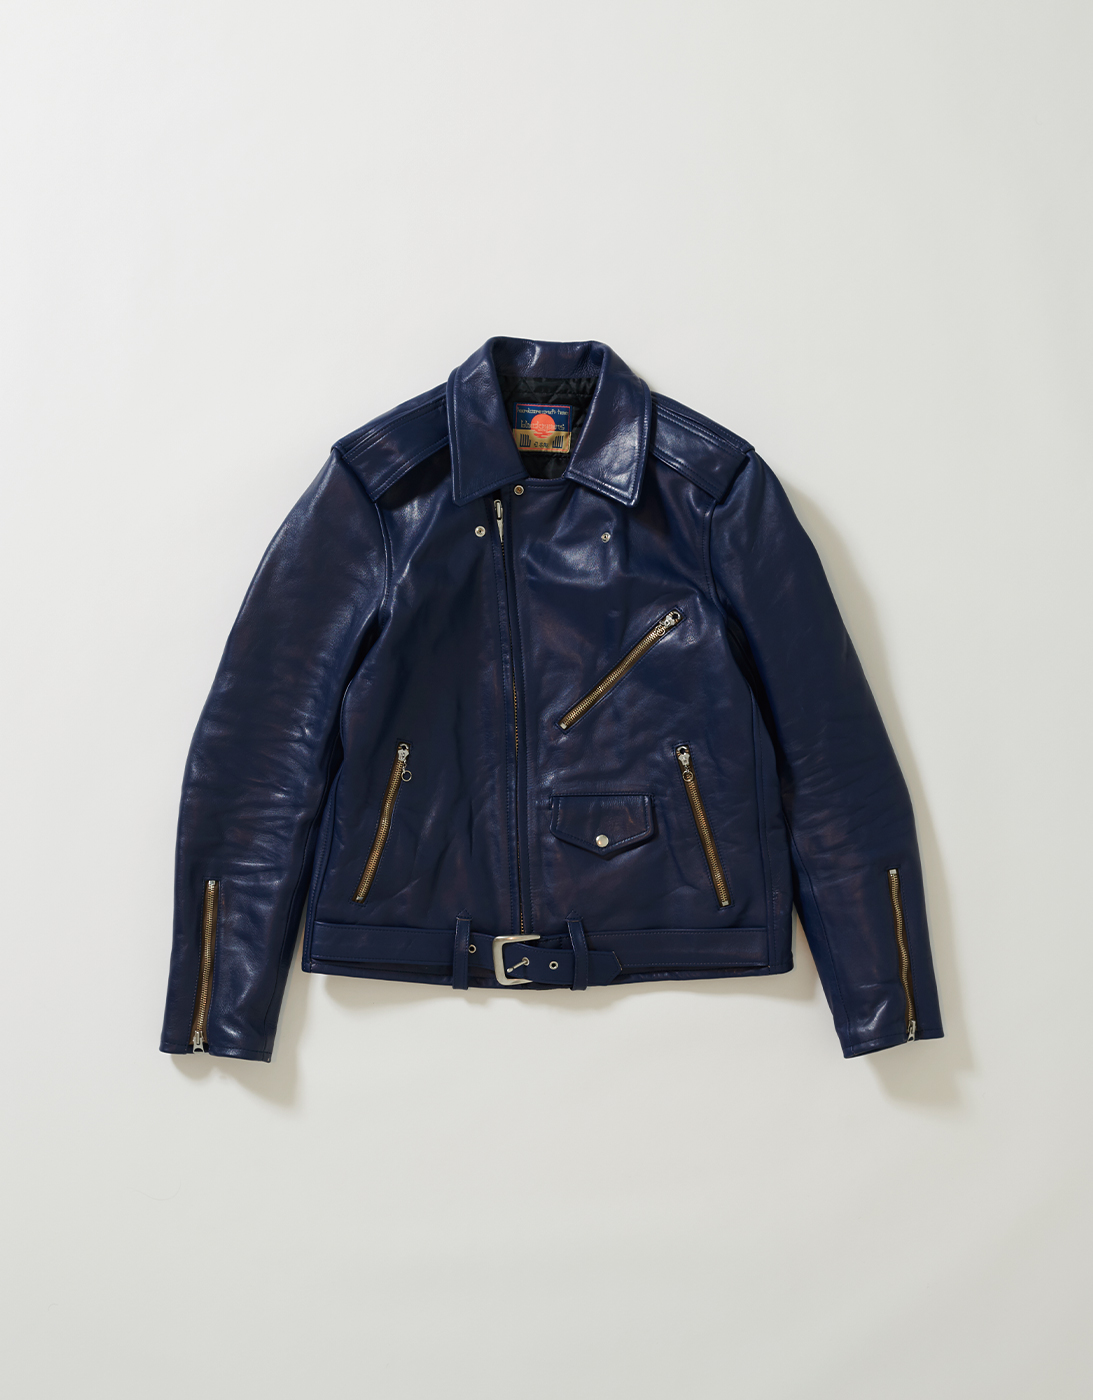 50’s Style Leather jacket with AIR UNIT (KARASUTENGU)